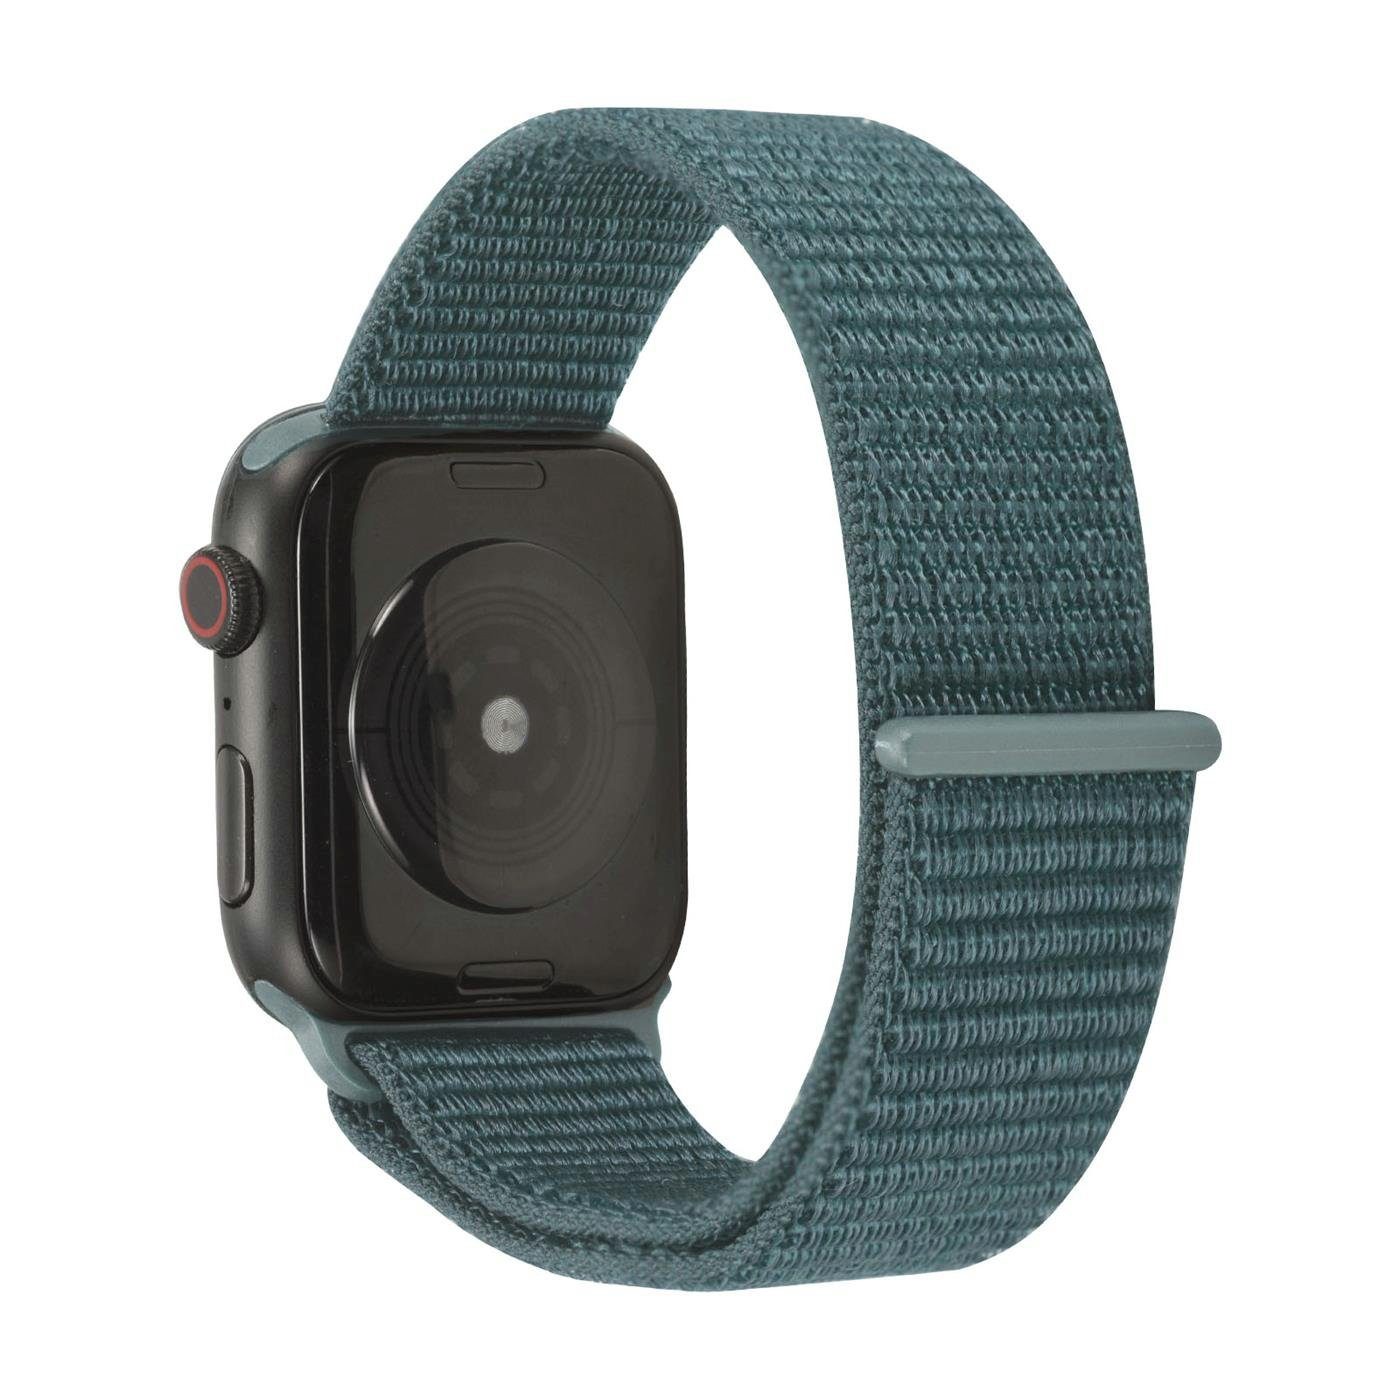 für Uhren Watch mit Gehäuse, Serie mit 44mm Nylon Band Klettverschluss CoolGadget 1. Stoff Ersatz Smartwatch-Armband Gen. Apple Grün